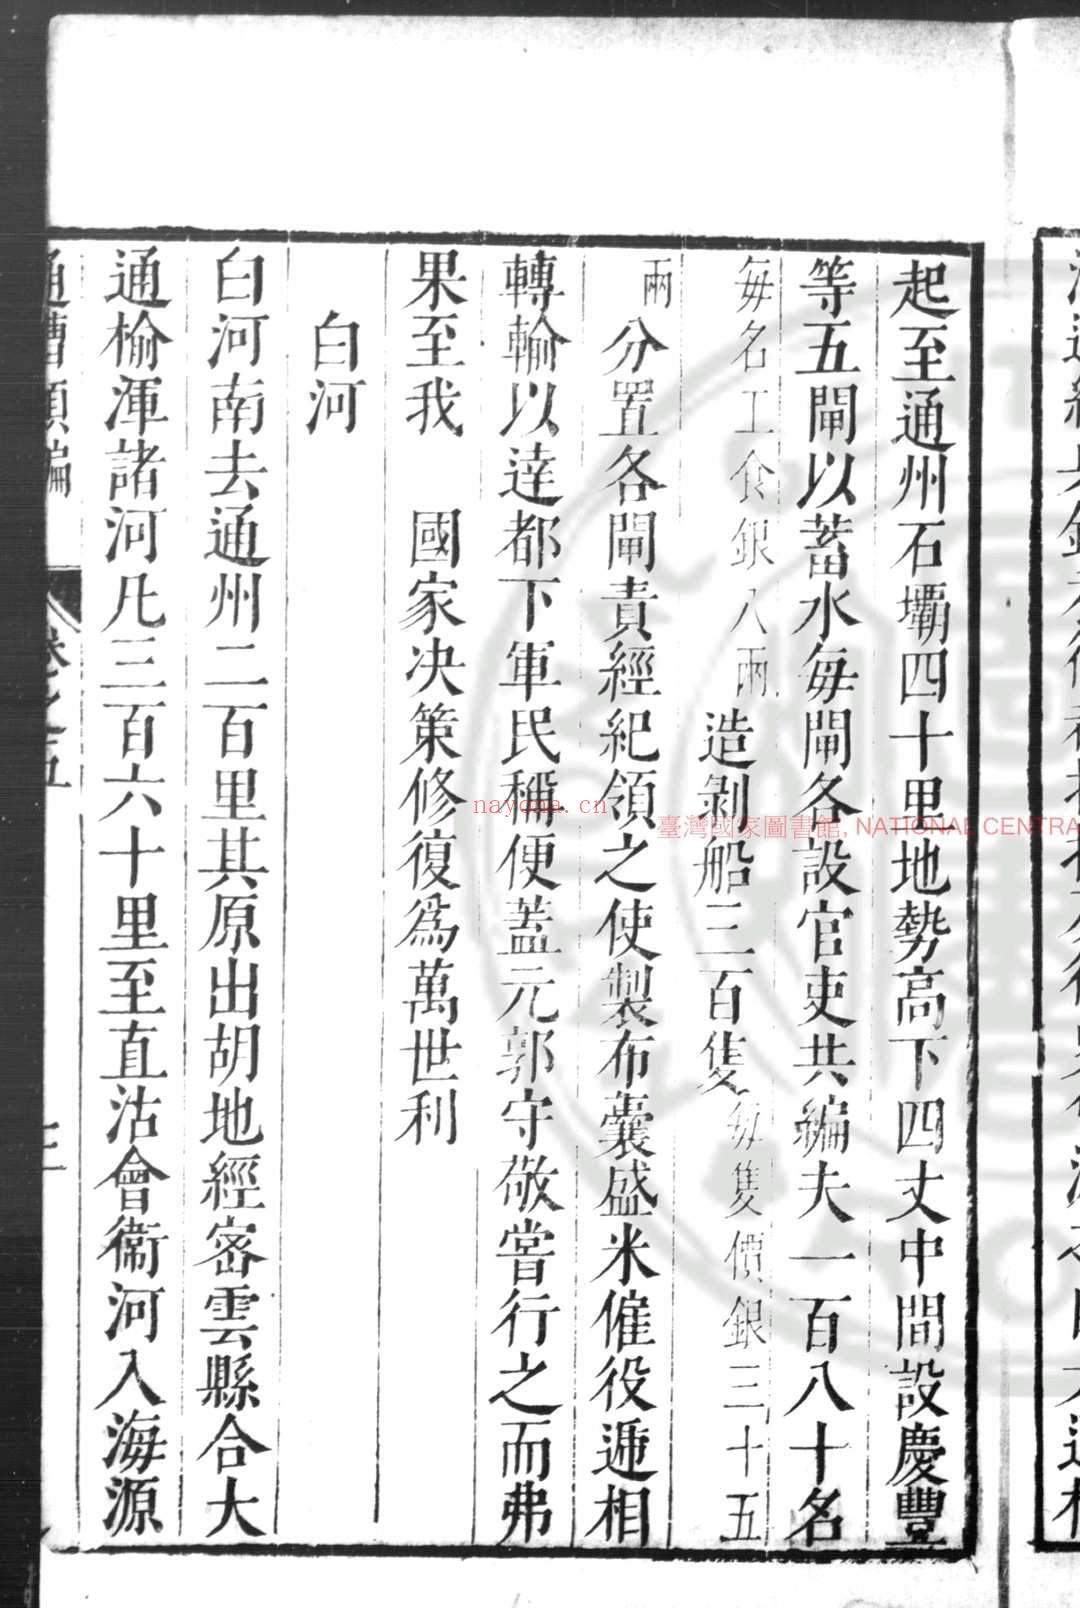 通漕类编 (明)王在晋撰 明启祯间(1621-1644)刊本